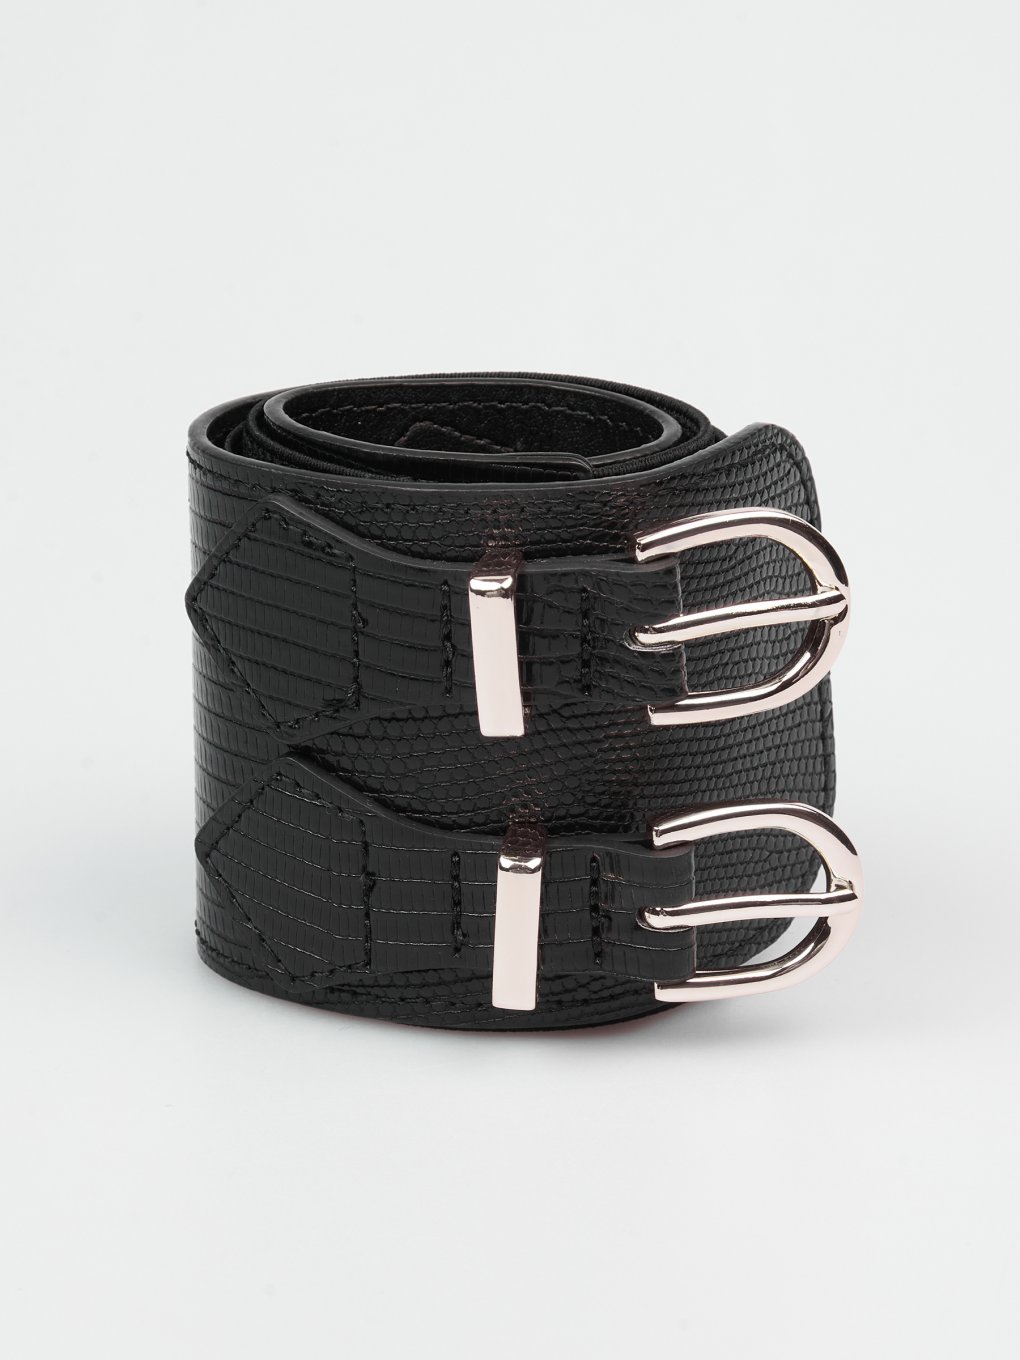 Wide waist belt